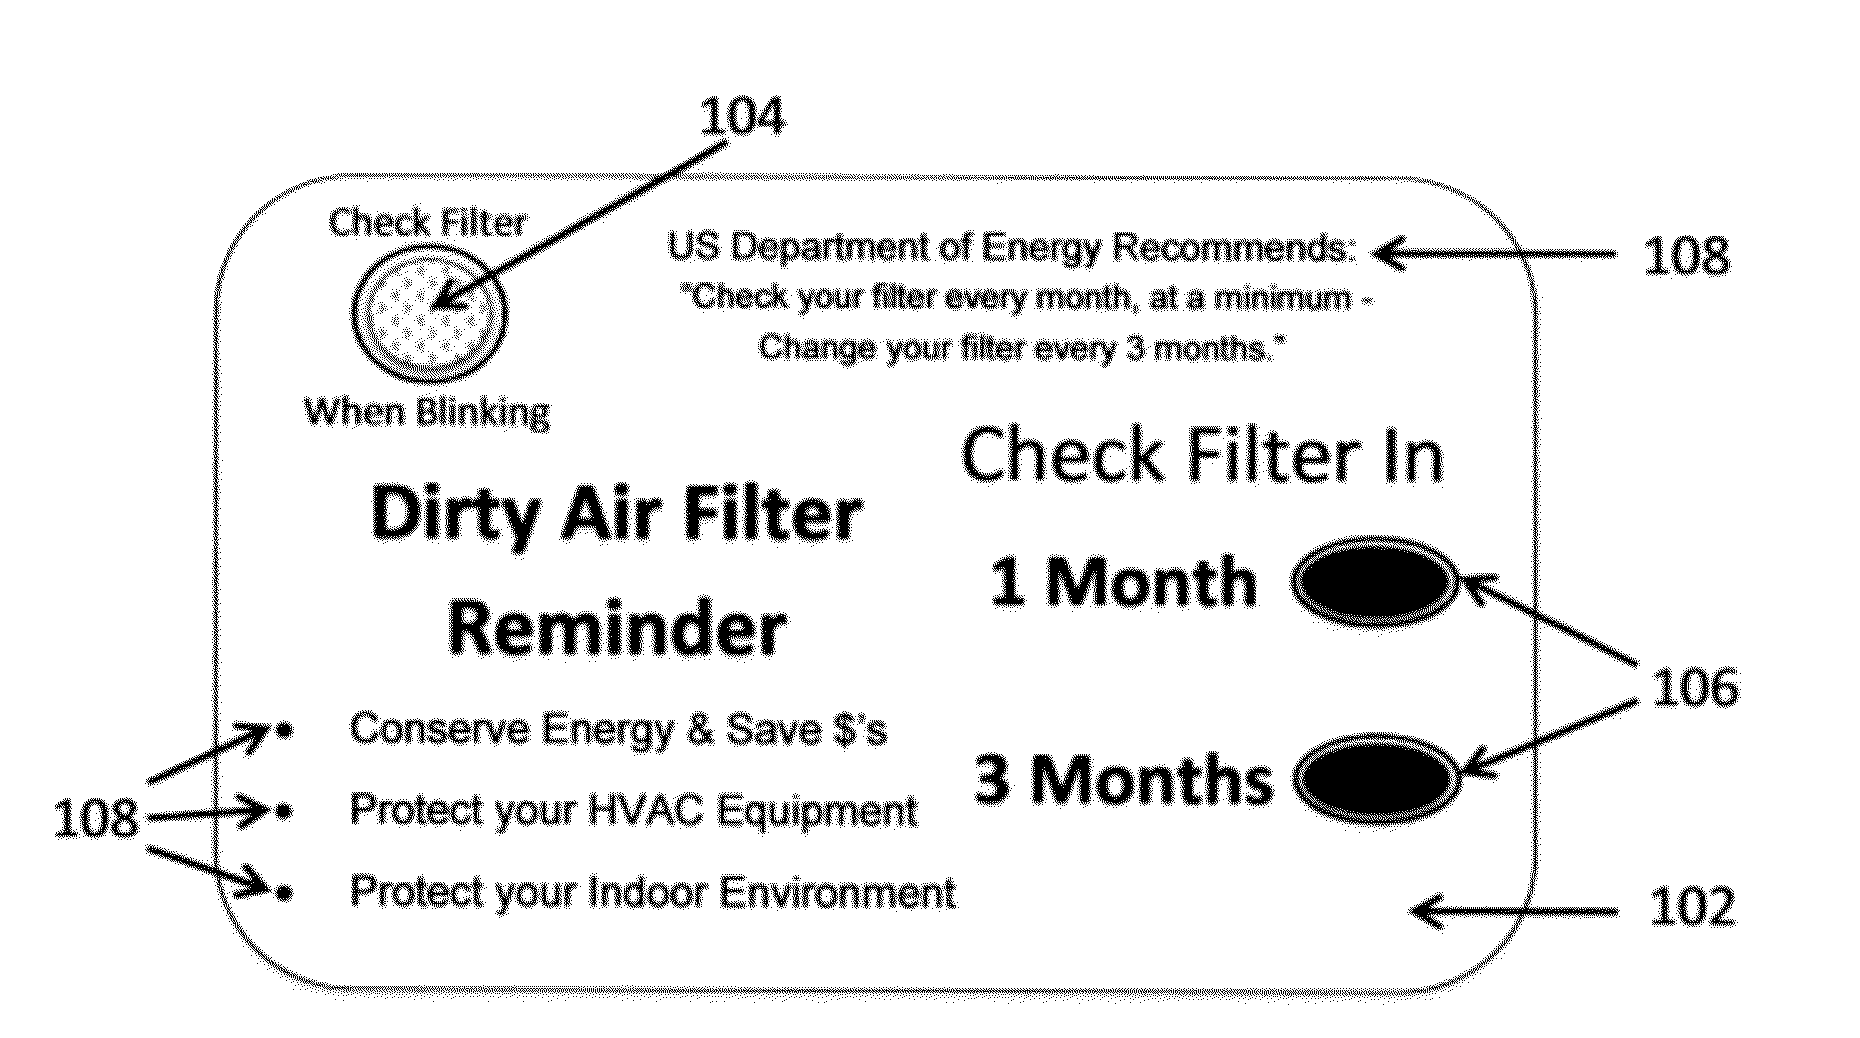 HVAC air filter check reminder refrigerator magnet